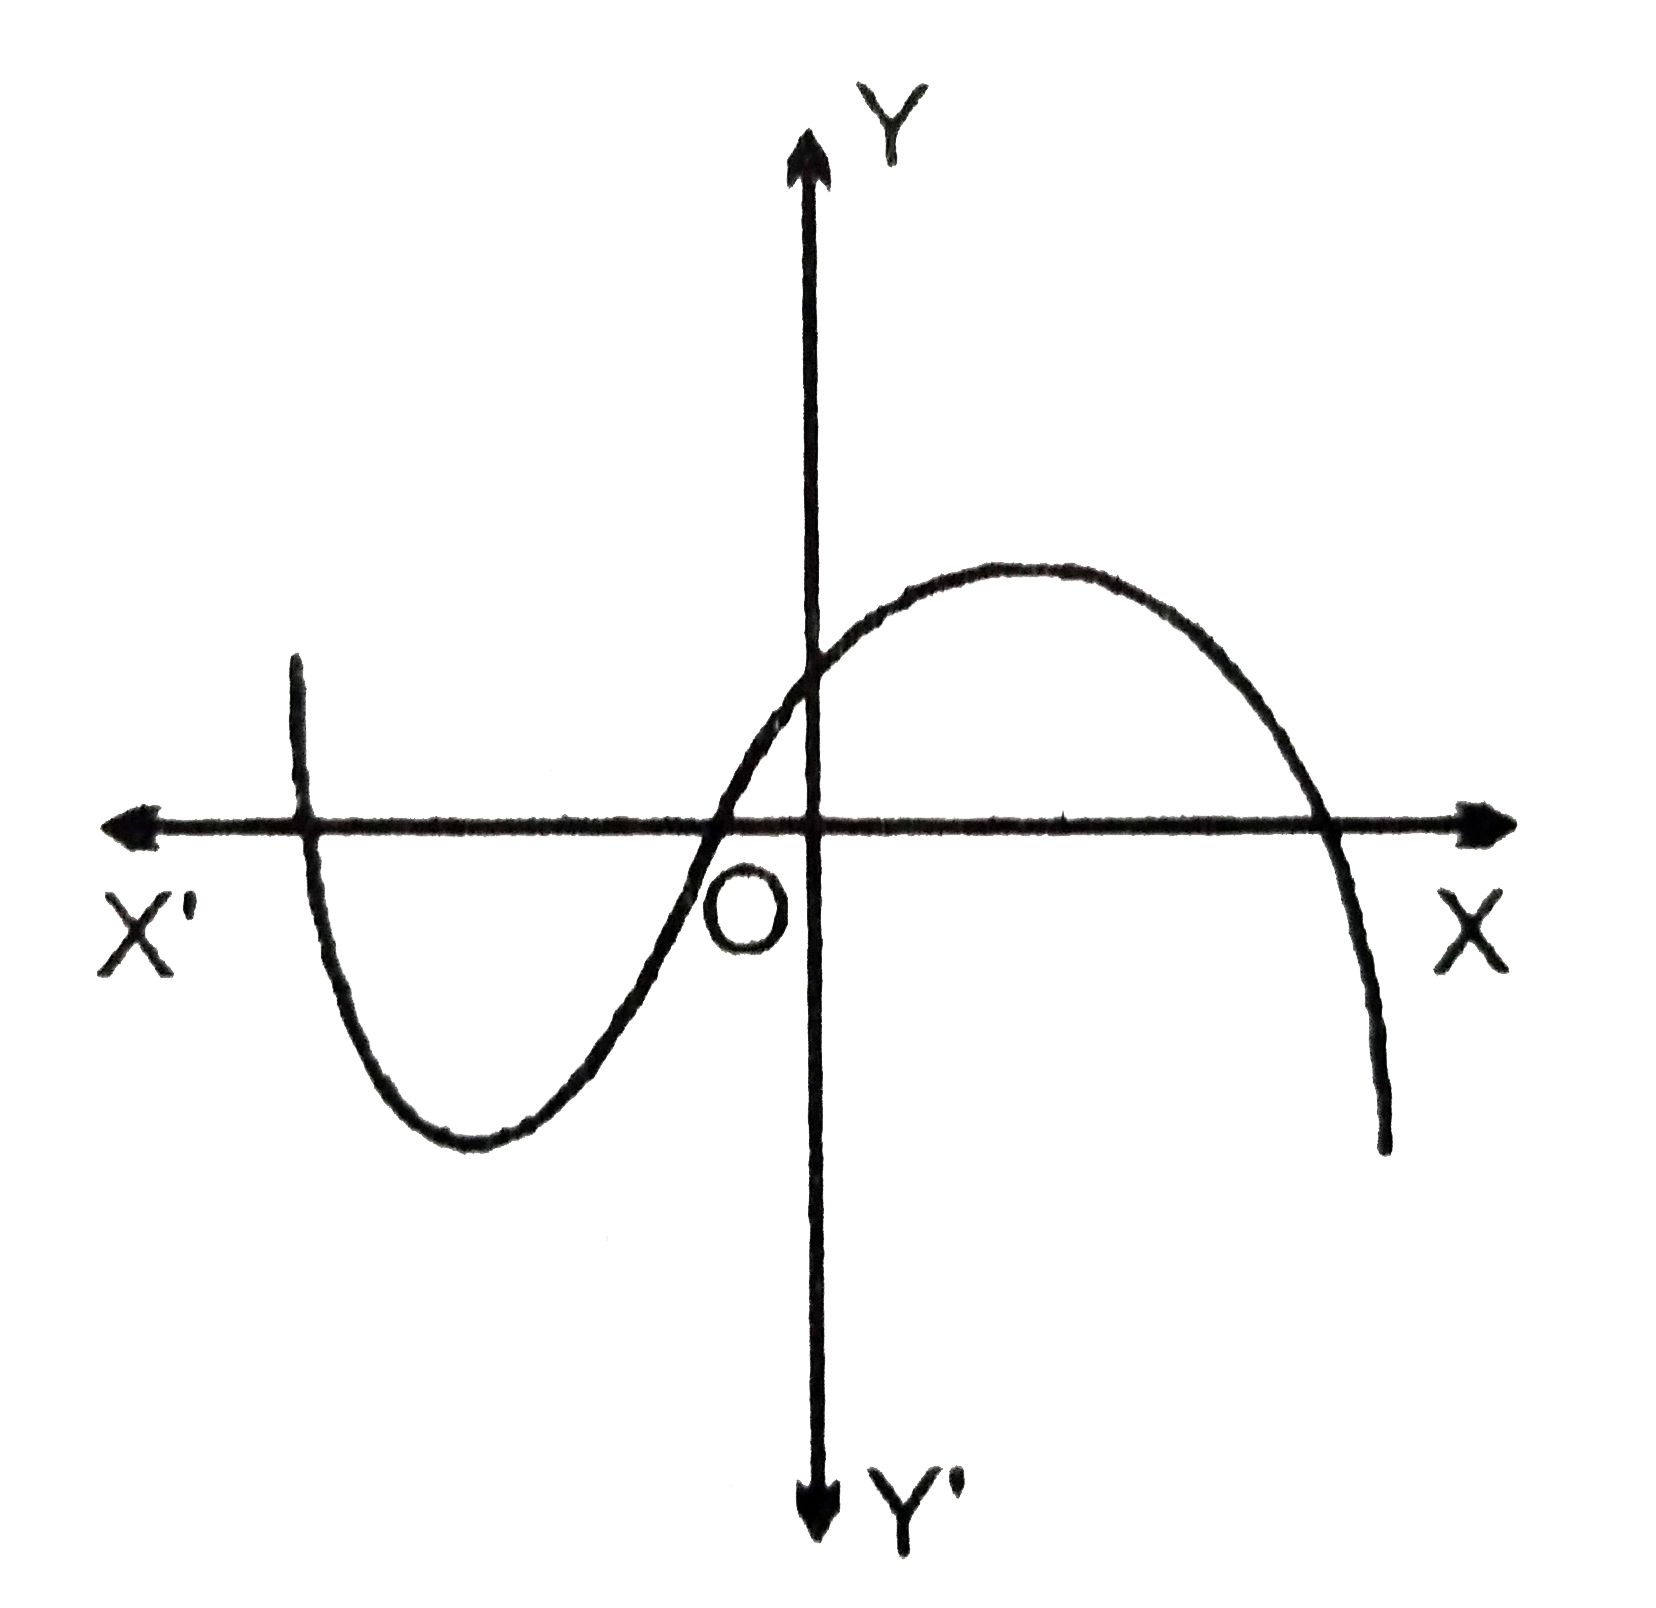 एक बहुपद y=f(x) का आलेख चित्र में दिया हुआ है तब इसके शून्यांक की संख्या लिखें |